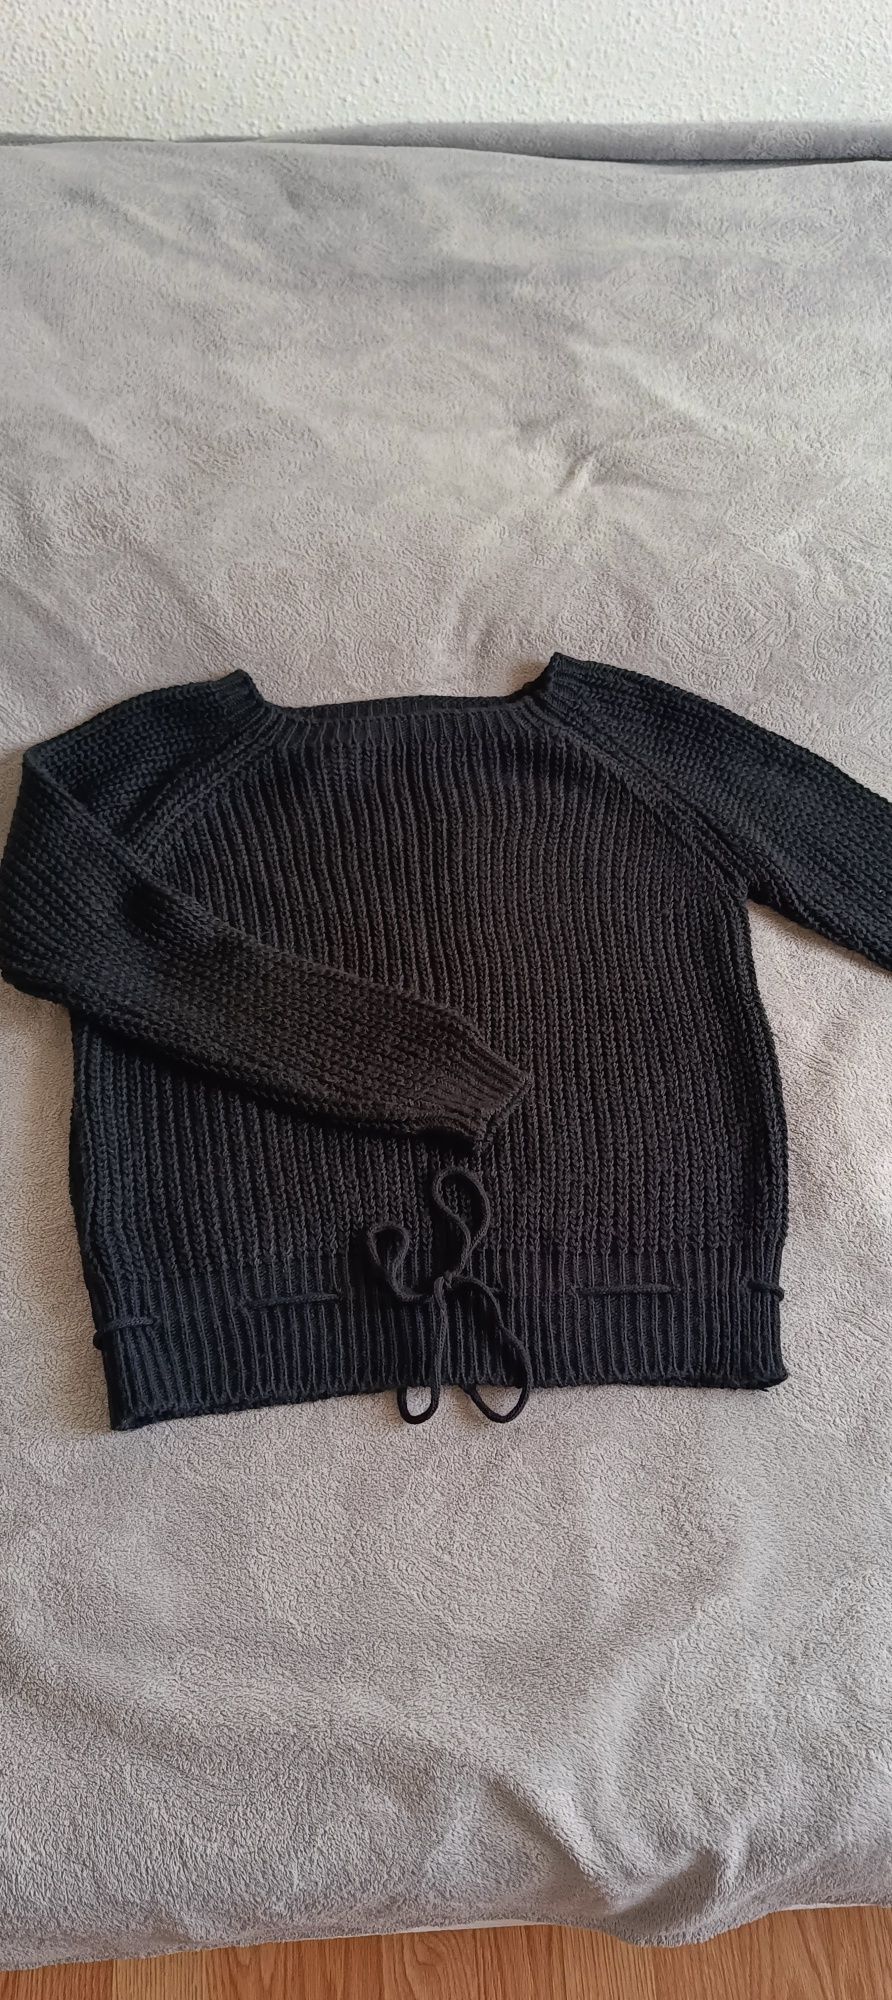 Sweterek czarny XS S